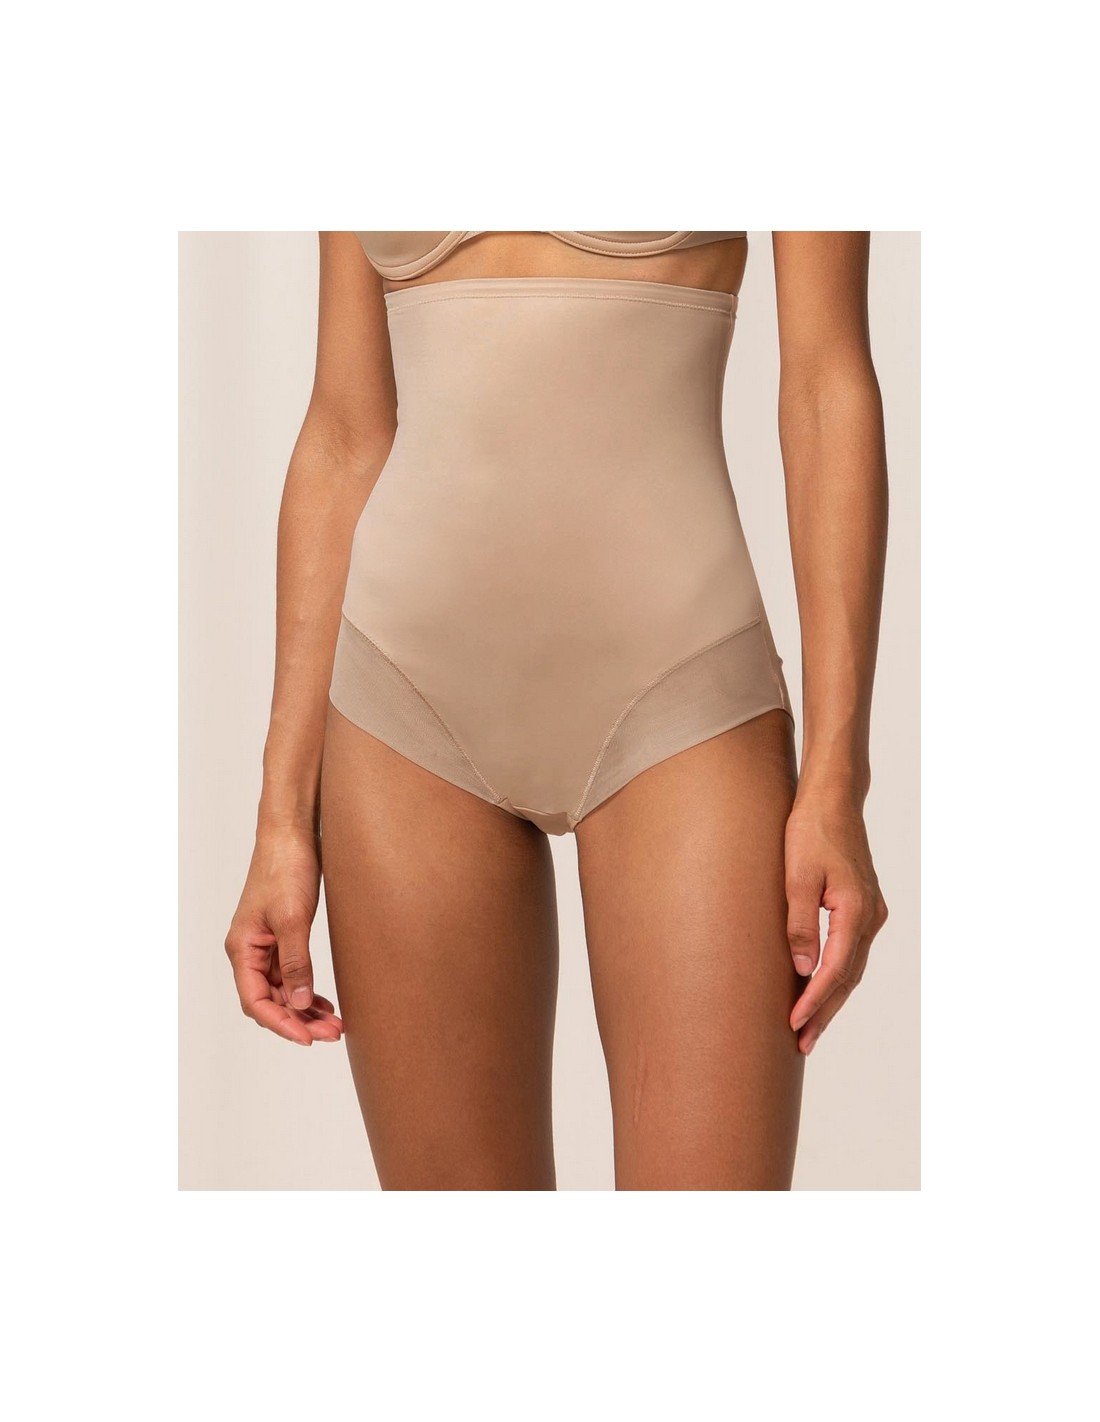 High waist shaping panties Triumph True Shape Sensation Super Hw Panty  Color beige Size 36 (S)